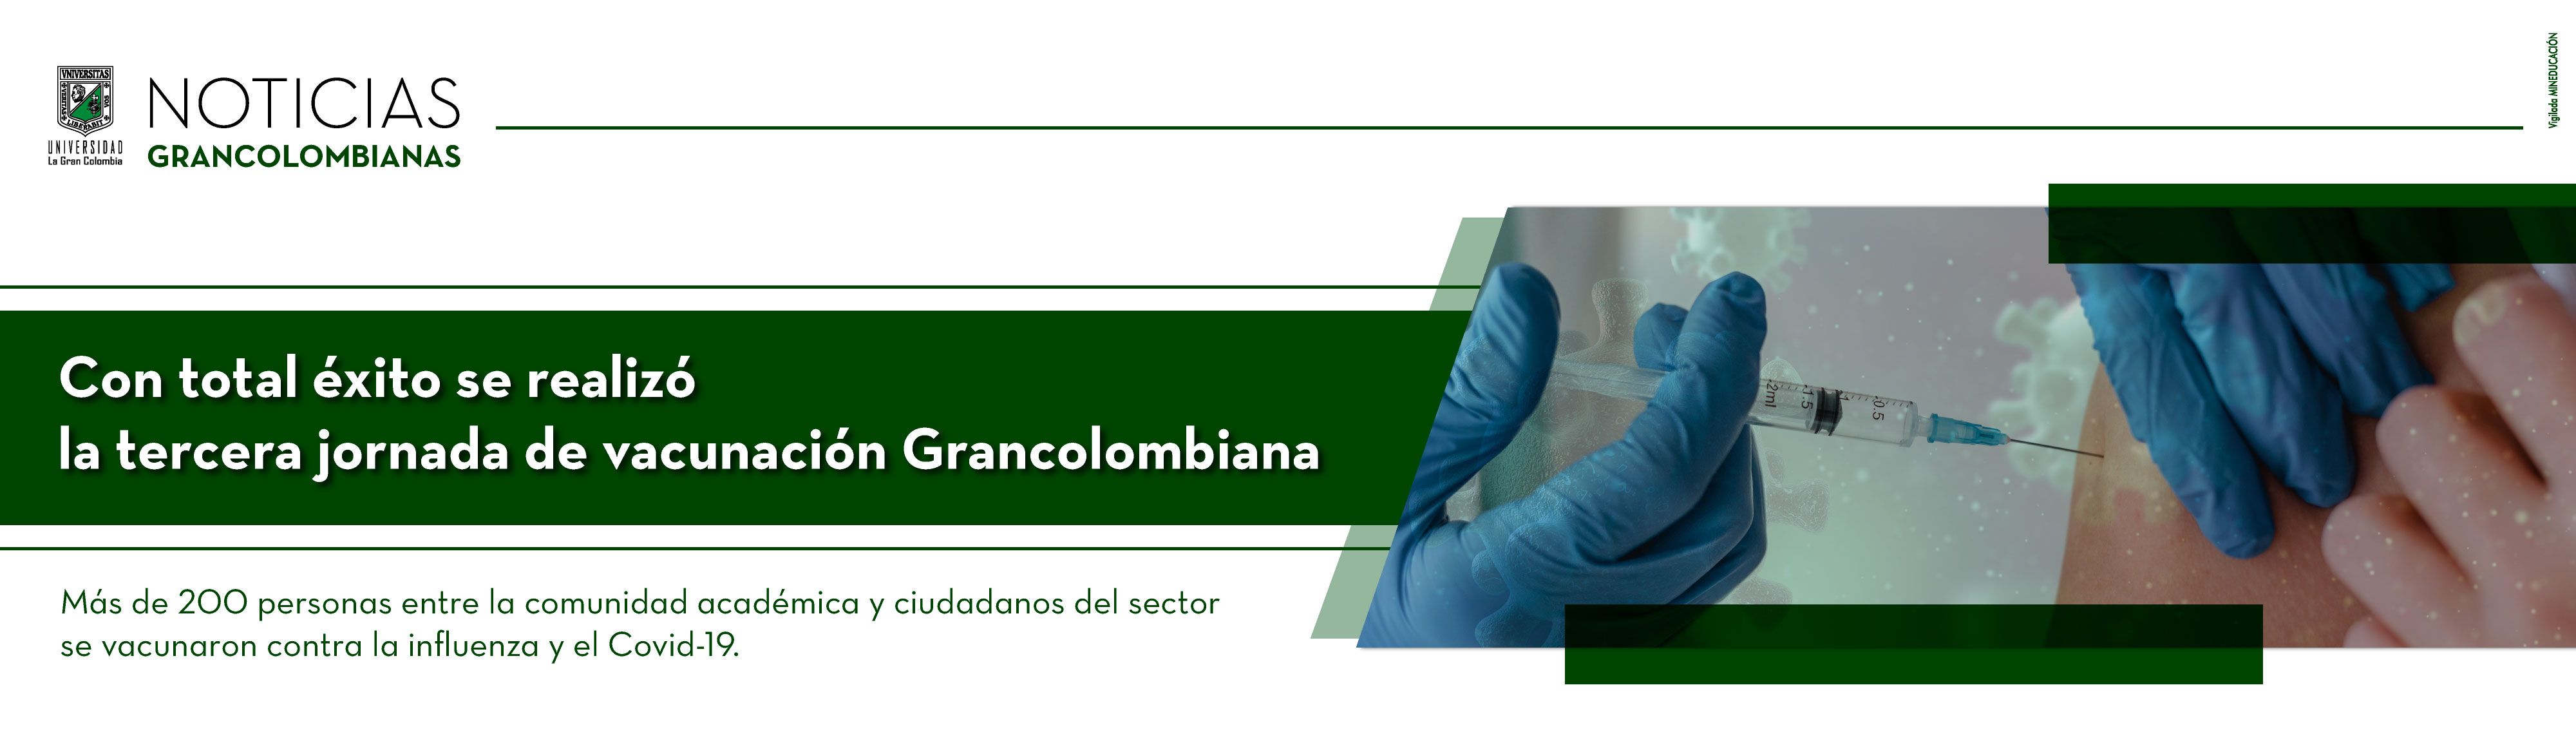 Con total éxito se realizó la tercera jornada de vacunación Grancolombiana